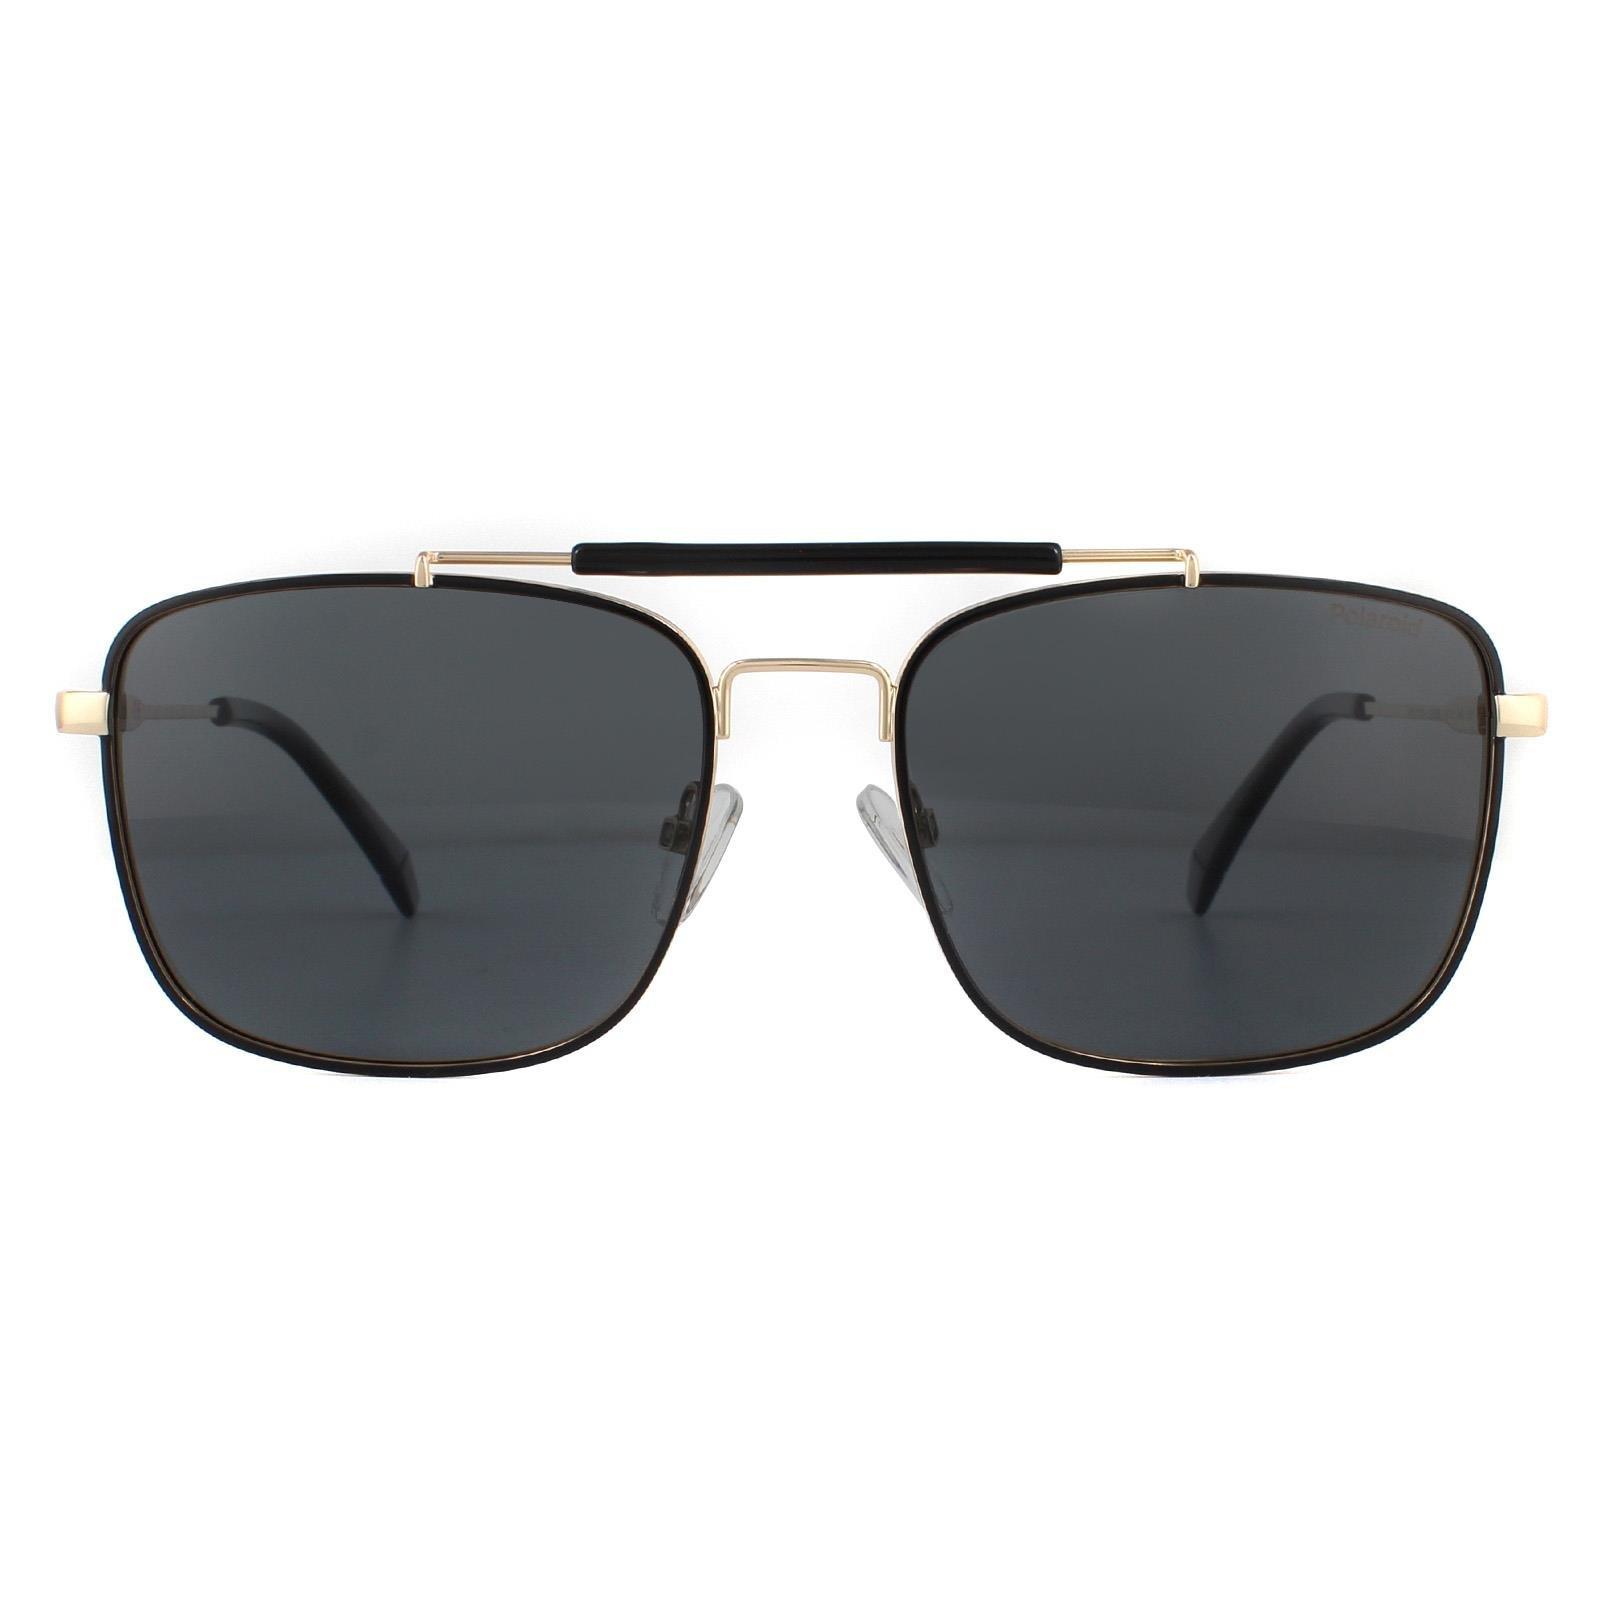 Поляризованные солнцезащитные очки Aviator Black Gold Grey Polaroid, золото